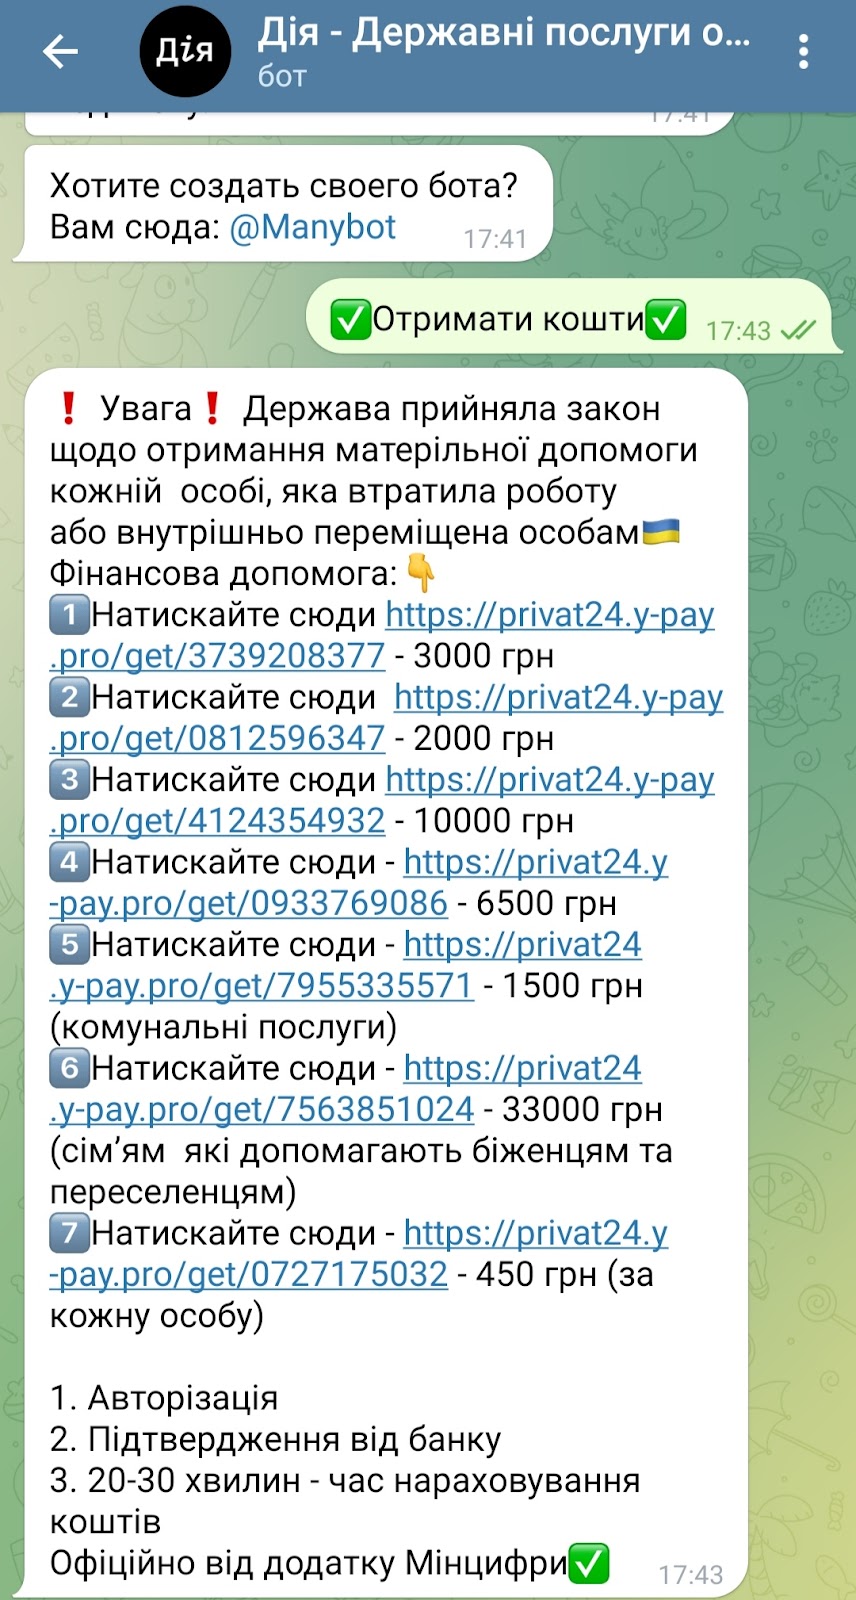 ПриватБанк попередив клієнтів про шахраїв: обманюють українців через додаток “Дія“